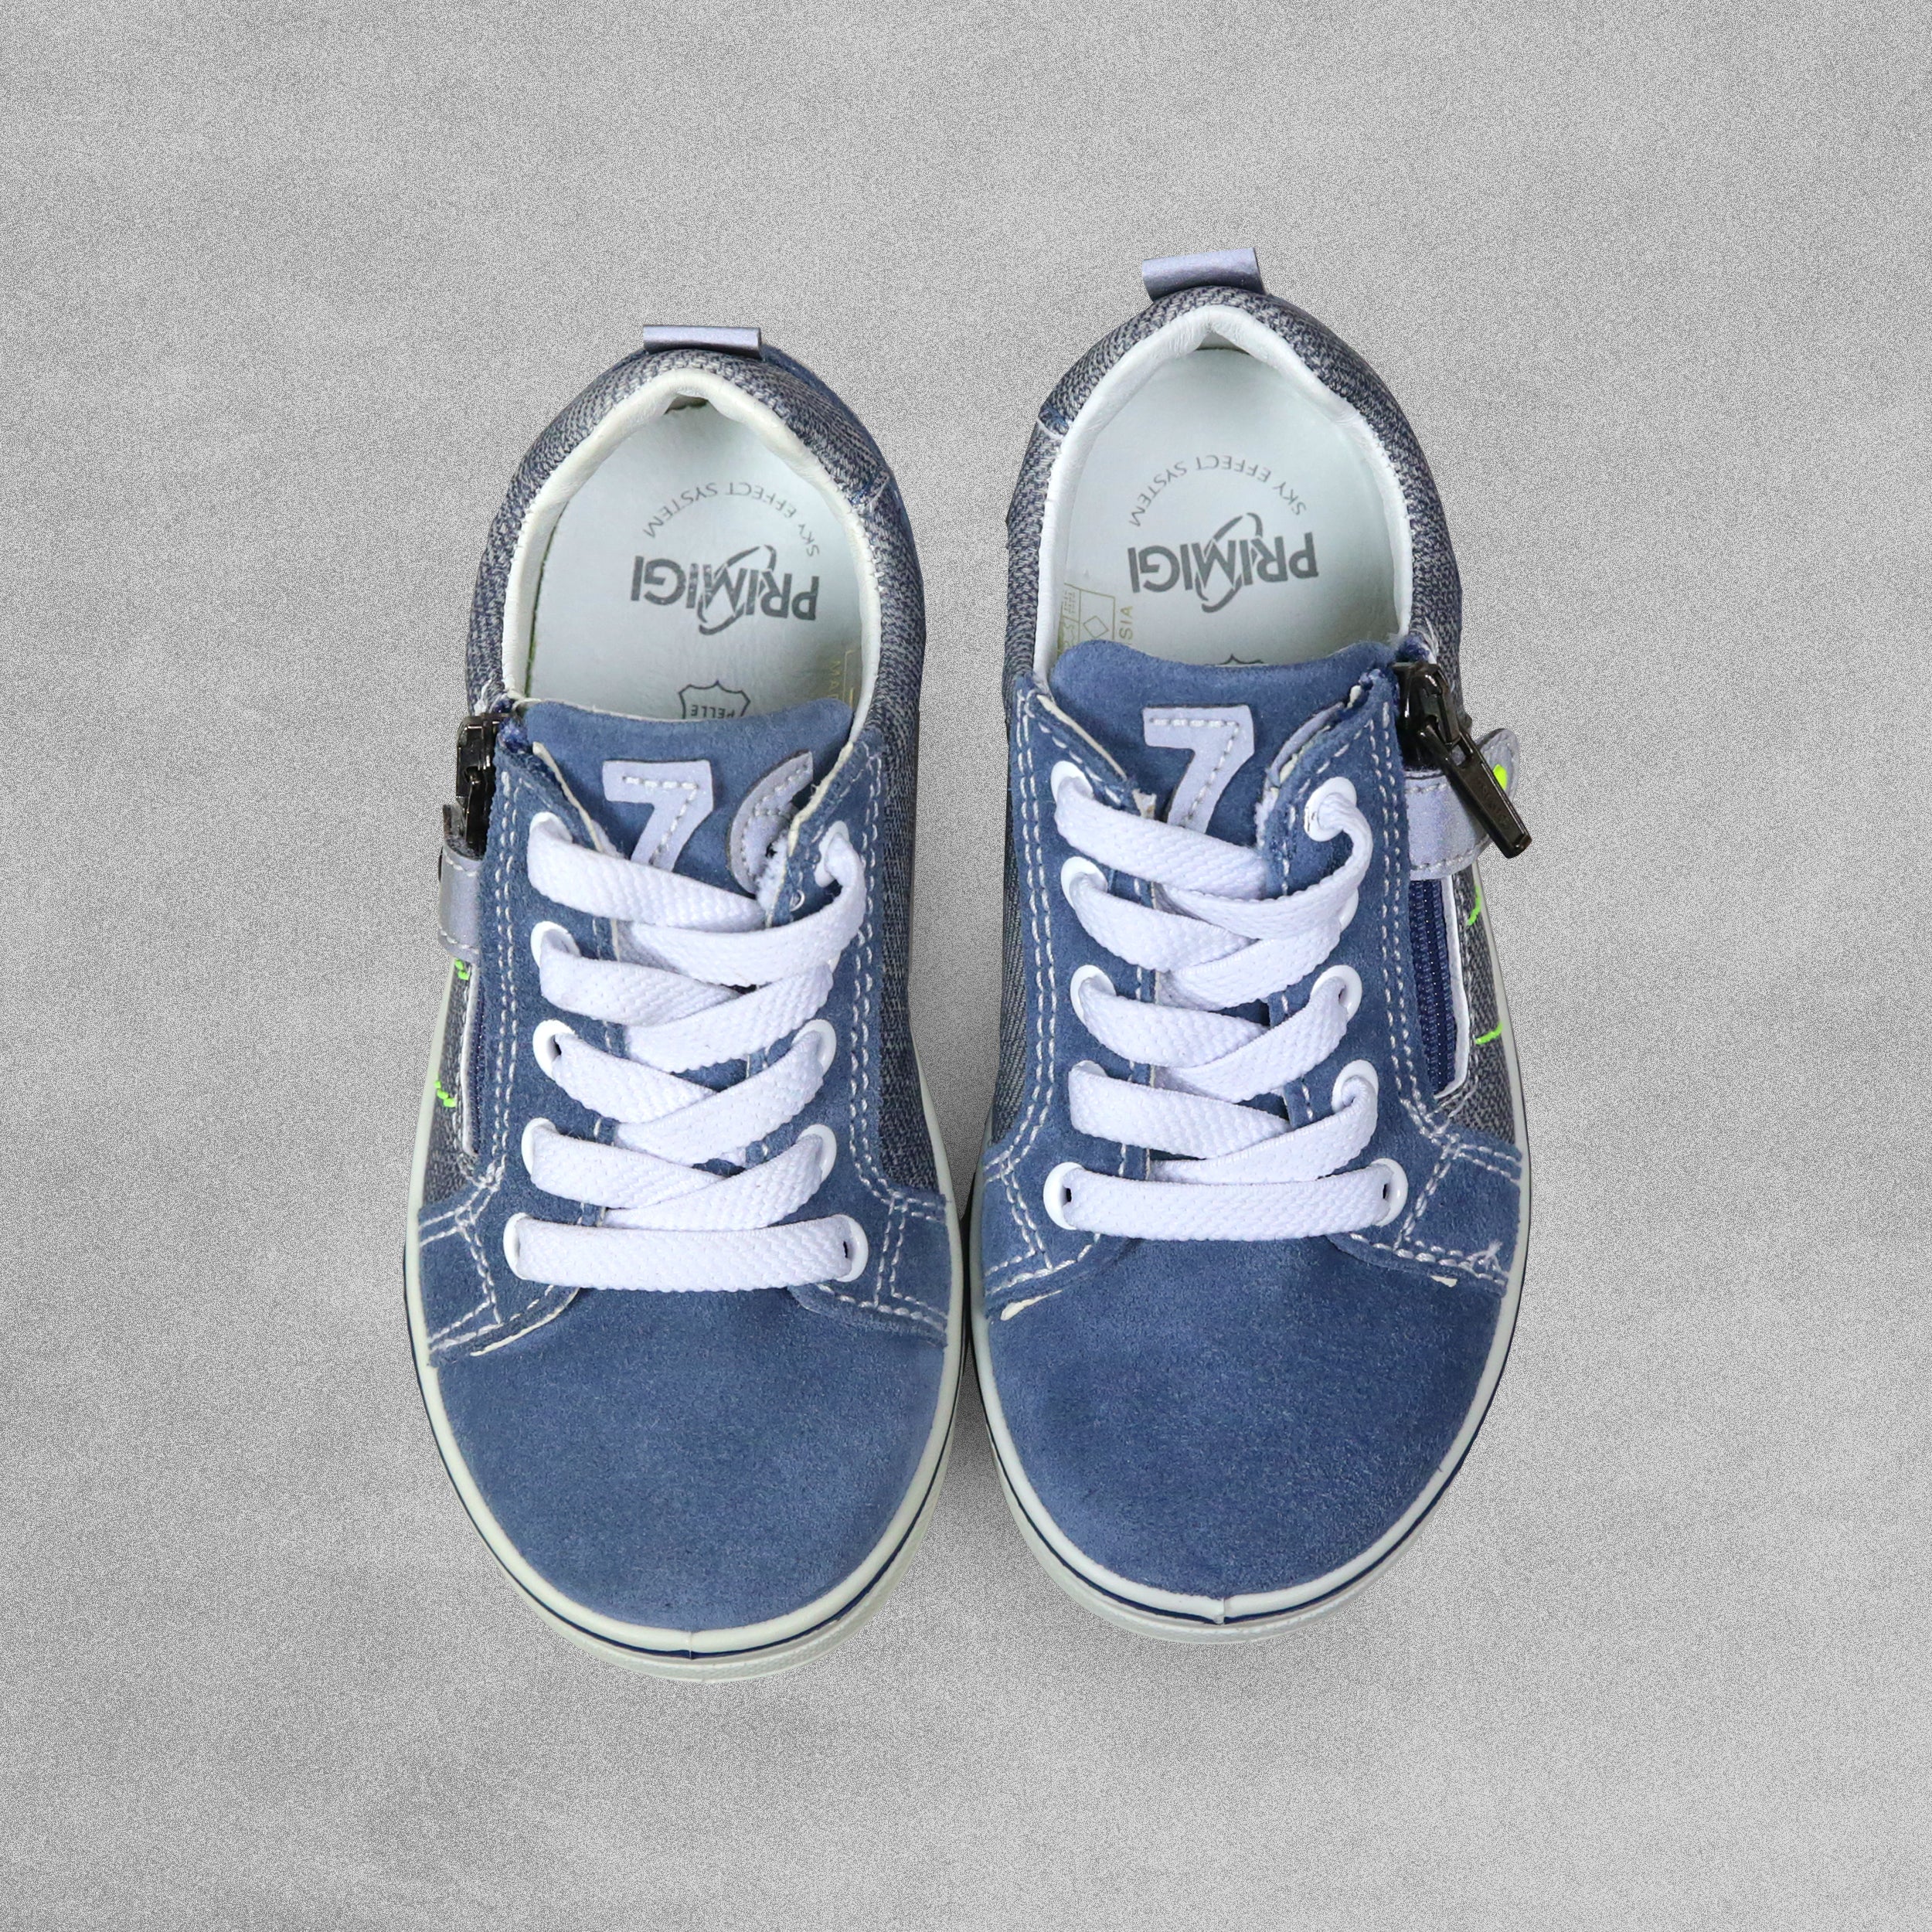 'Primigi'  Blue Suede Leather Shoes - UK Child Size 8 / EU 25